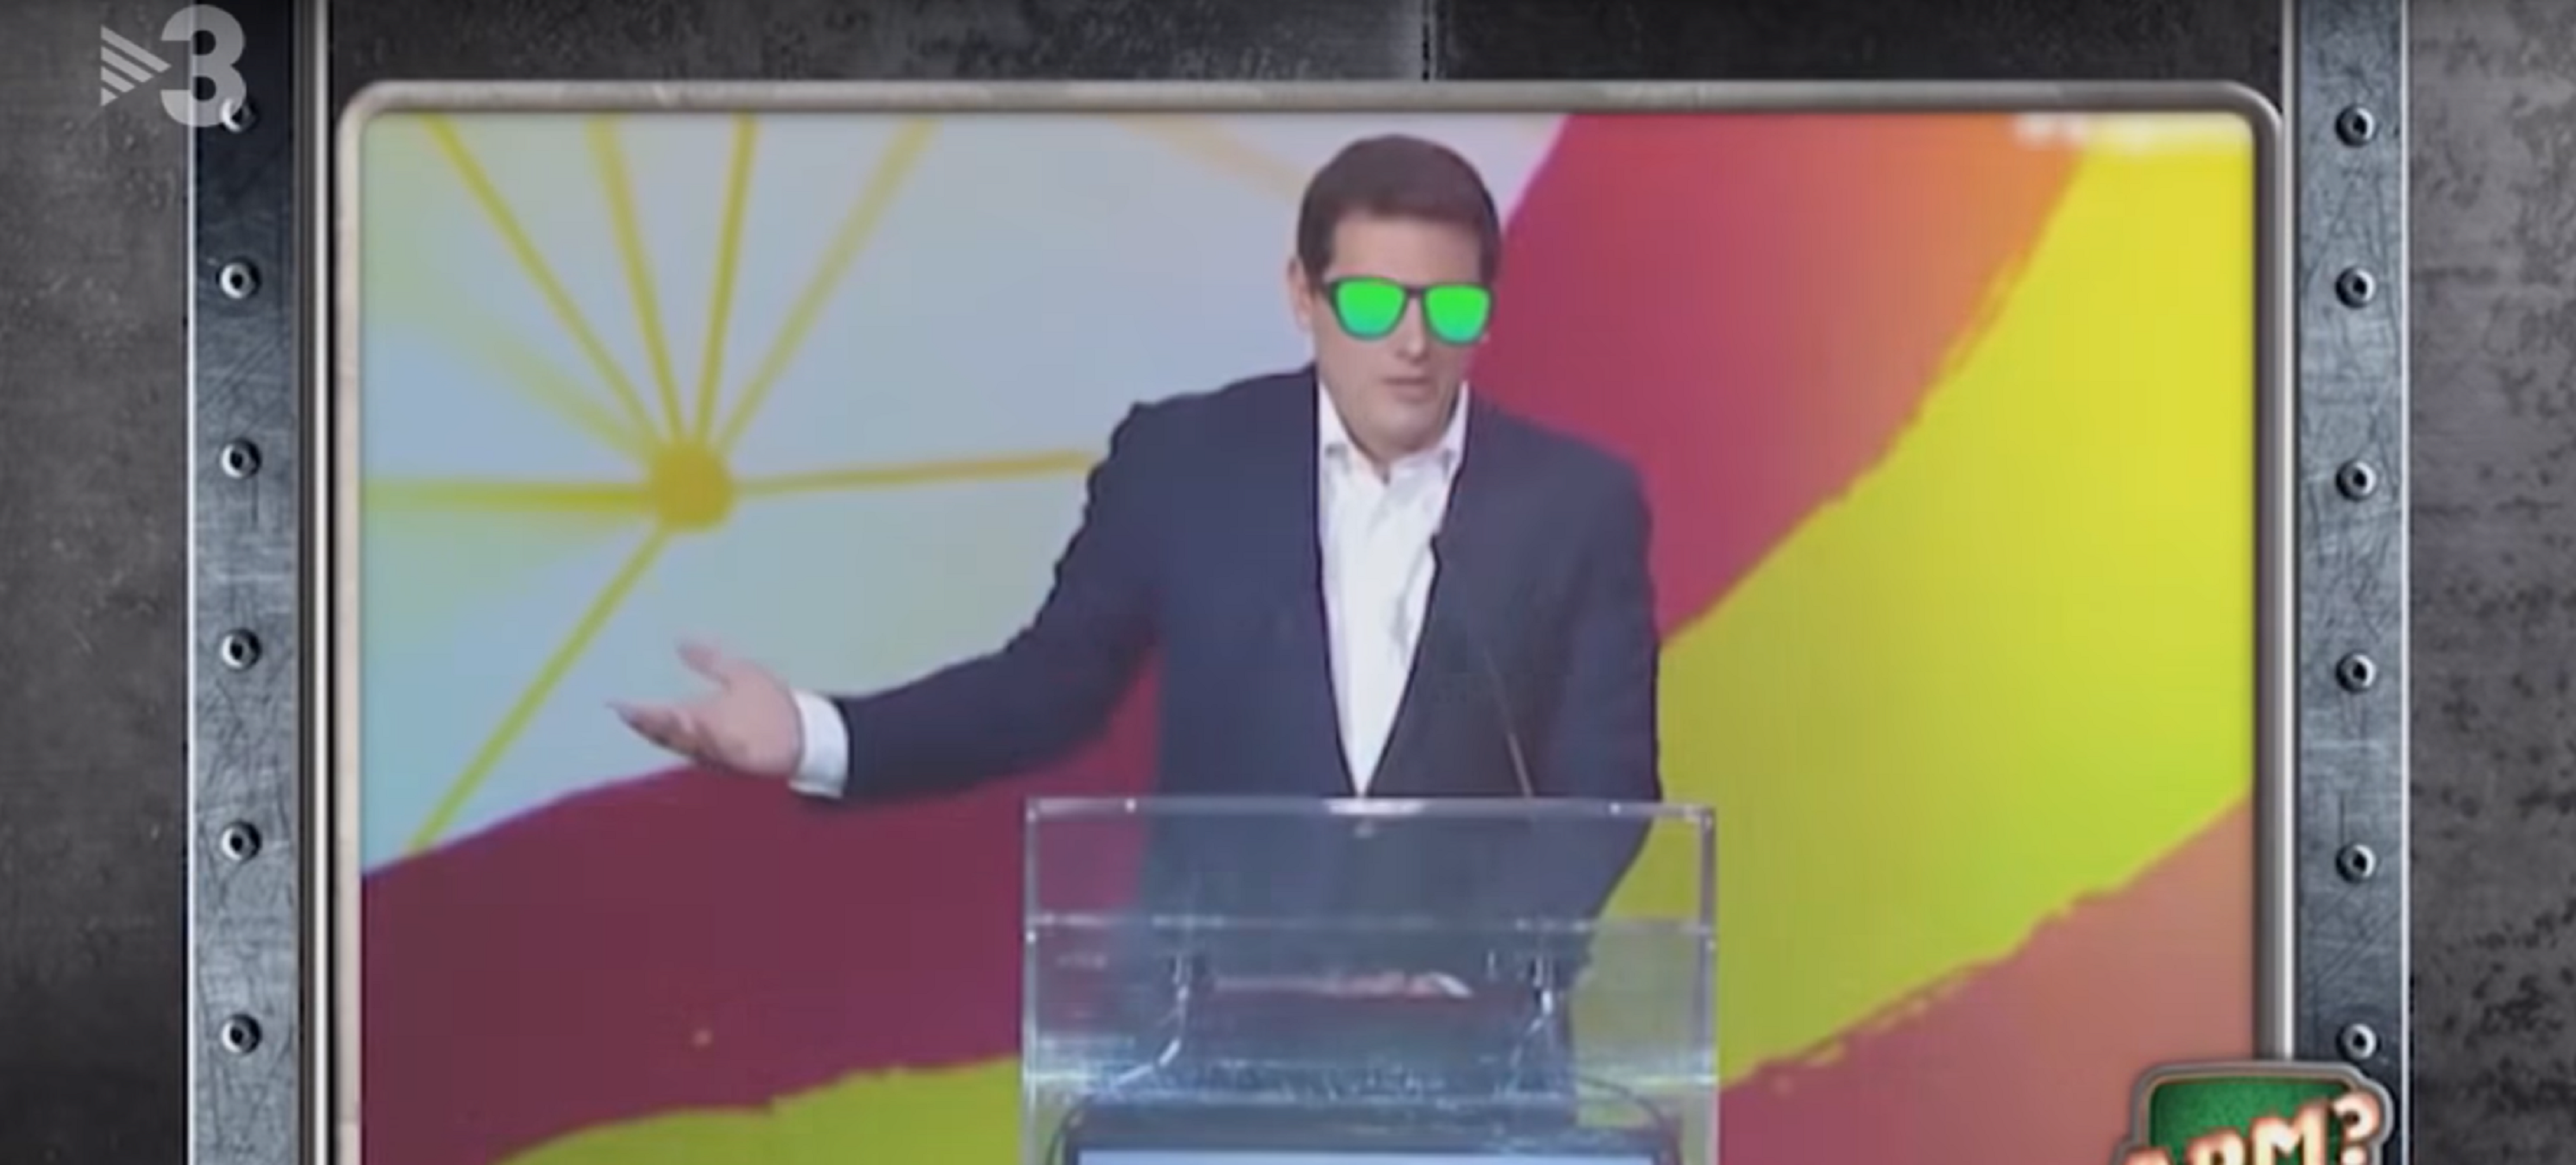 TV3 es riu de Rivera, li fa un rap i lidera: "Yo, yo, yo veo españoles"